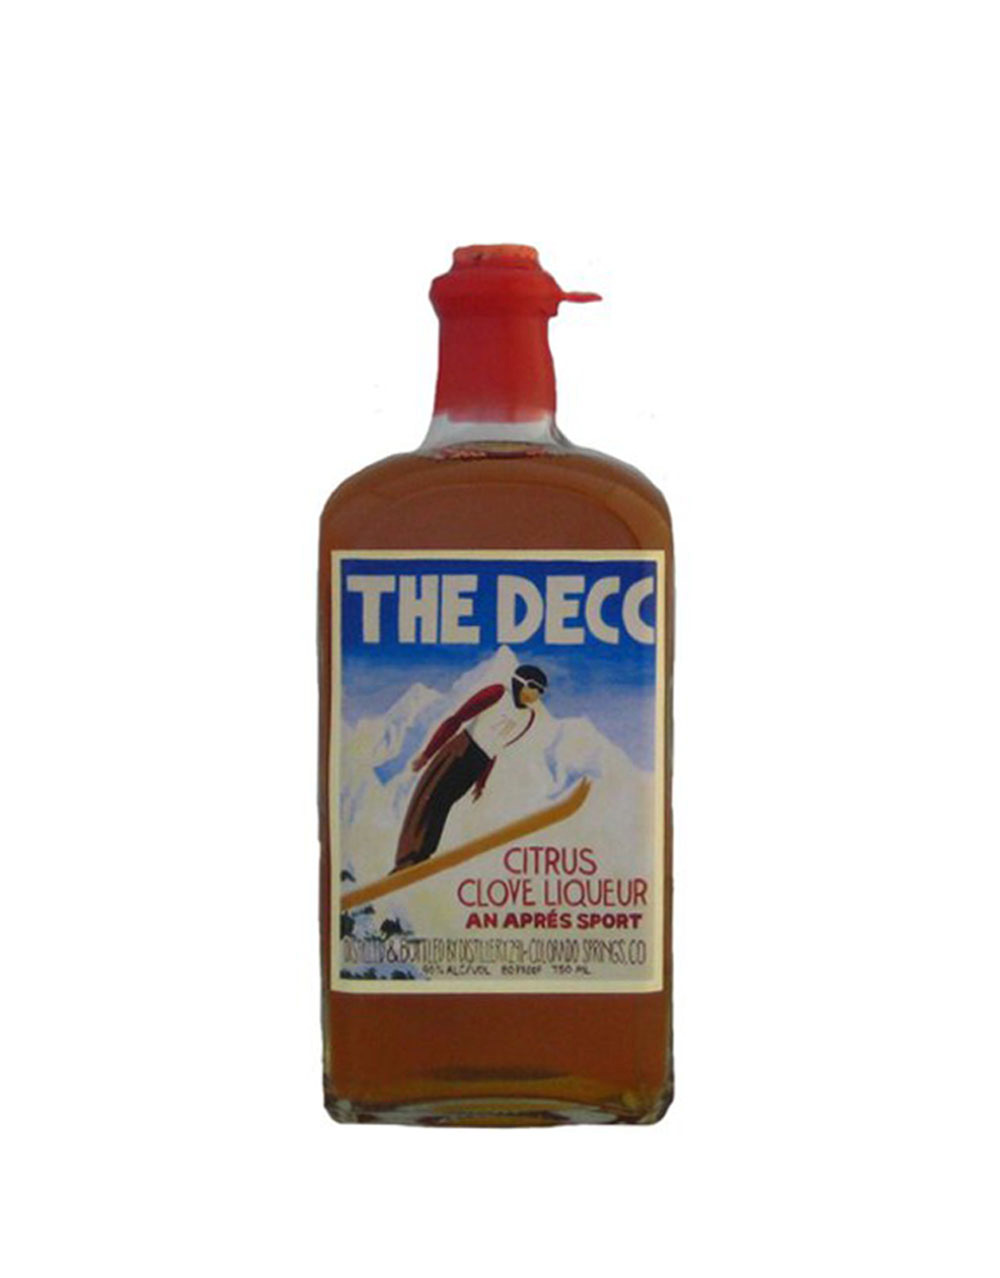 The Decc Citrus Clove Liqueur